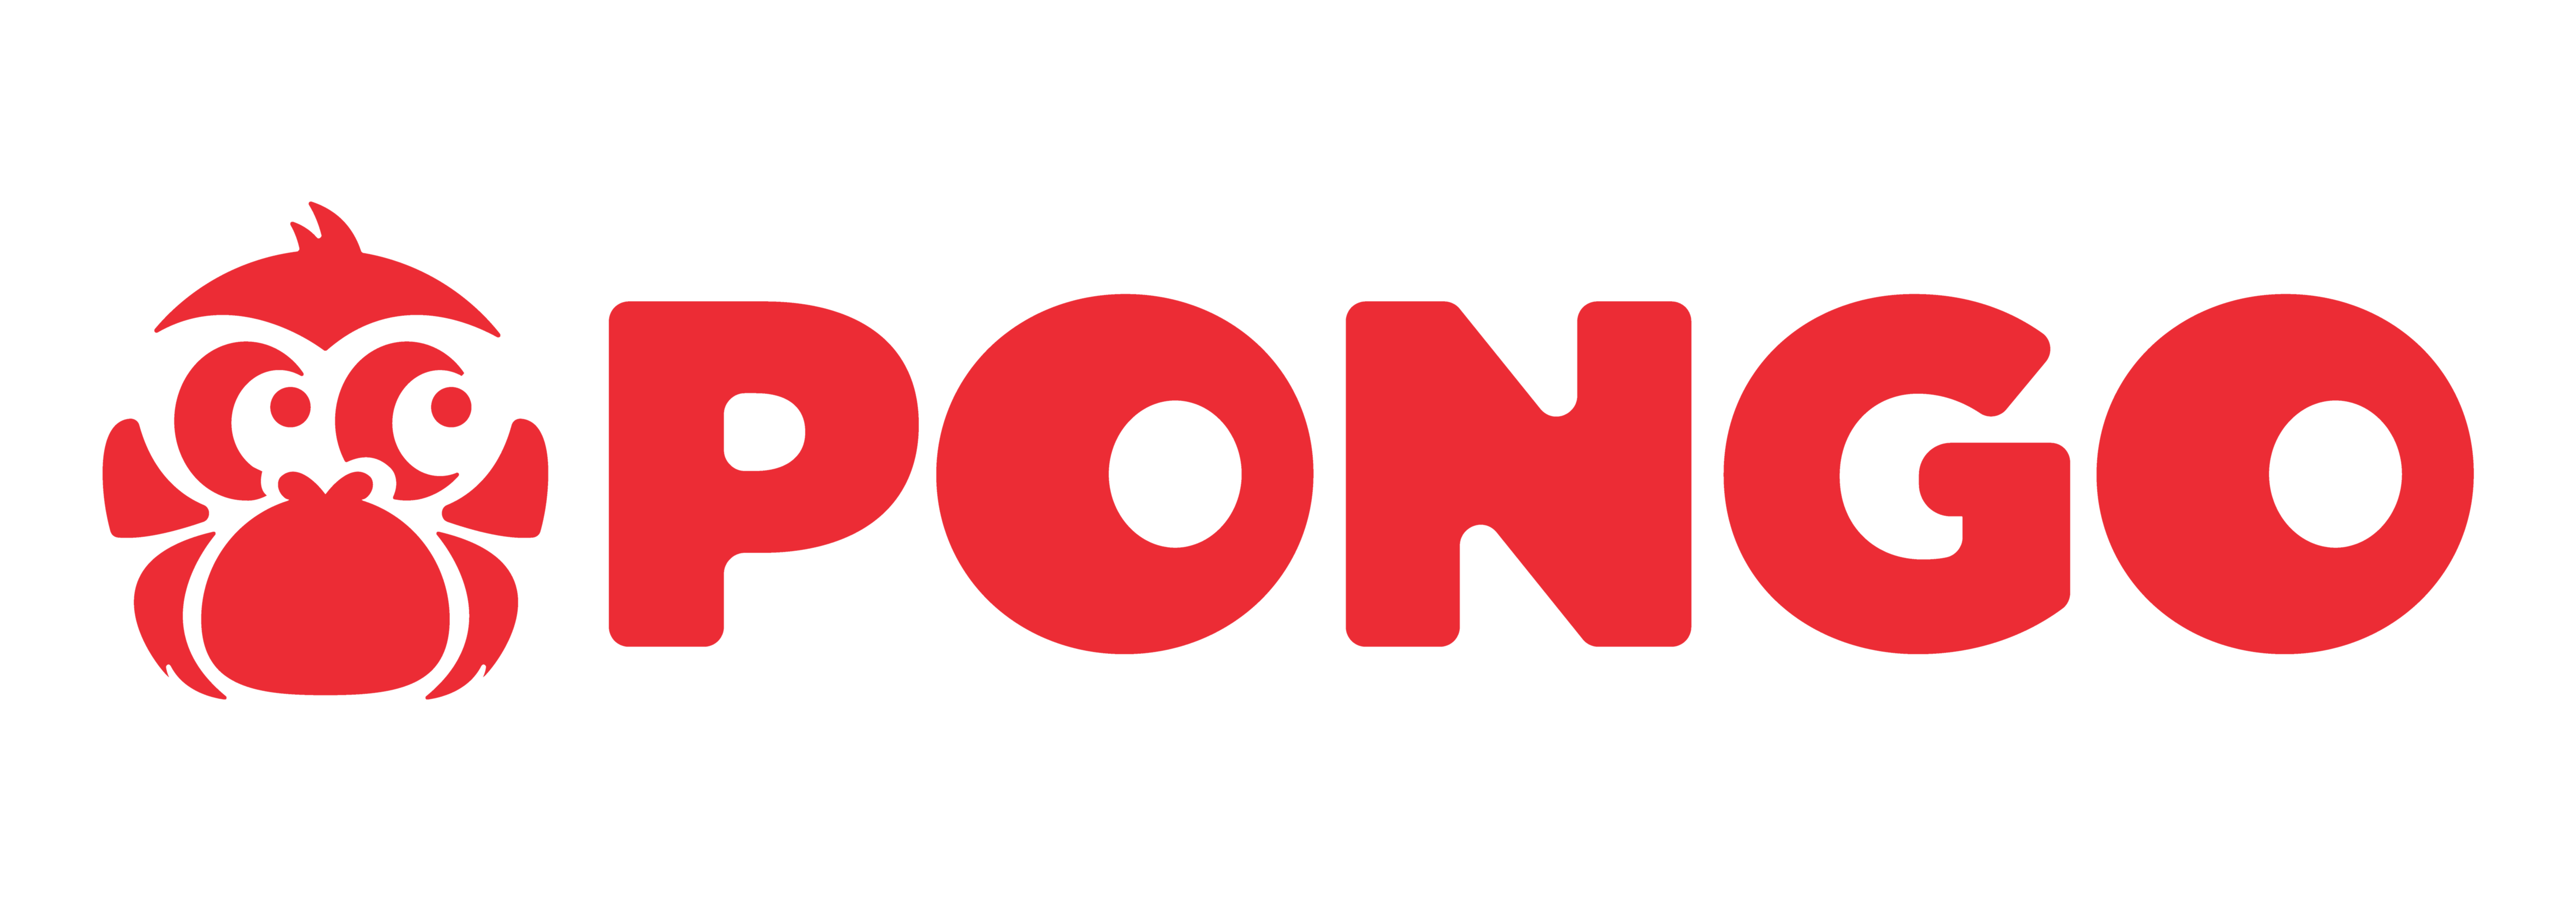 PONGO: Top Digital & Content Partner